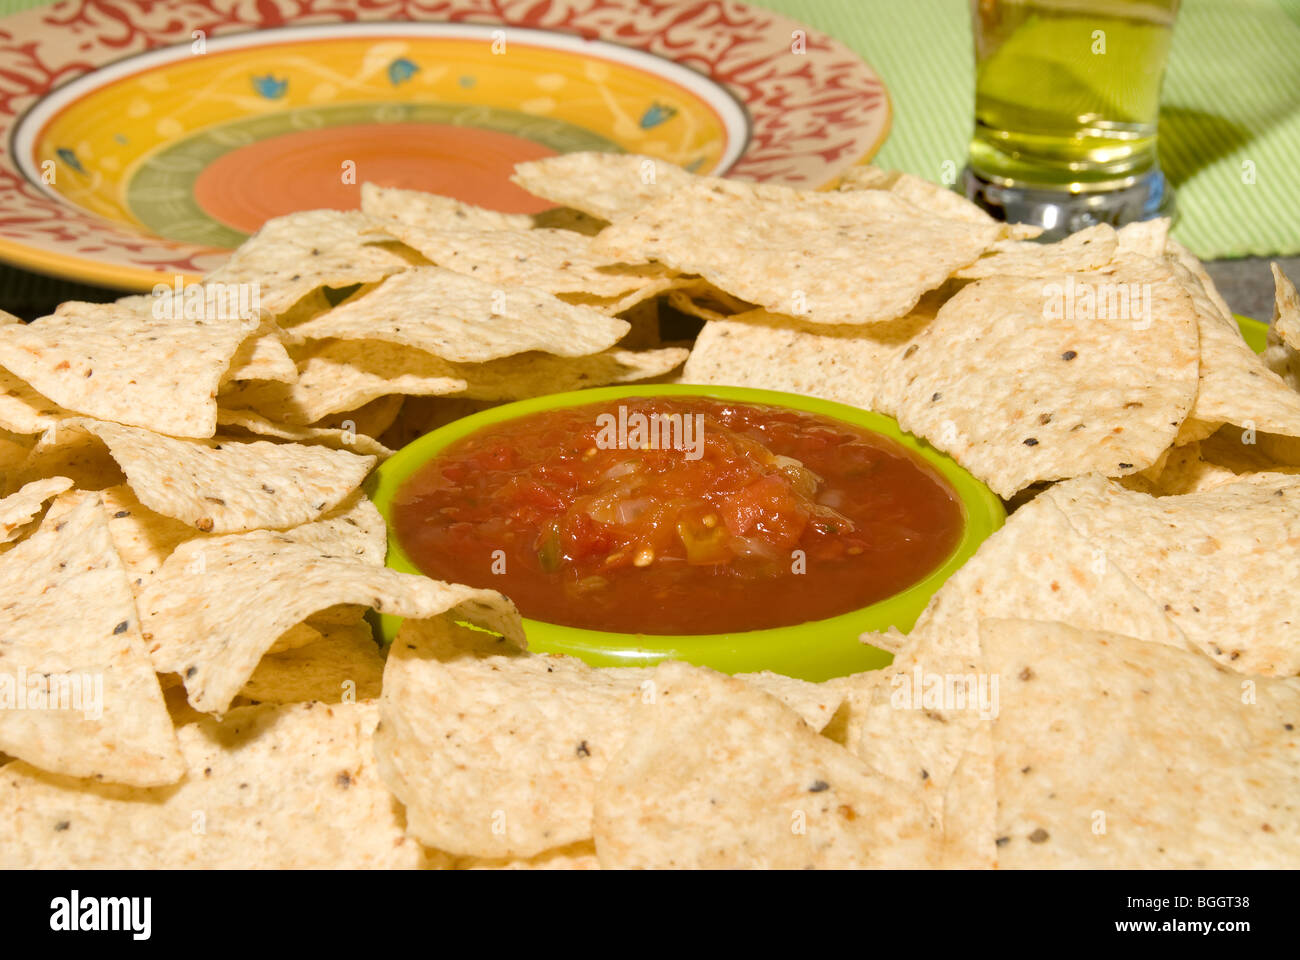 Un lugar de tortilla chips con una placa de estilo mexicano en espera de ser cargados con comida para picar Foto de stock